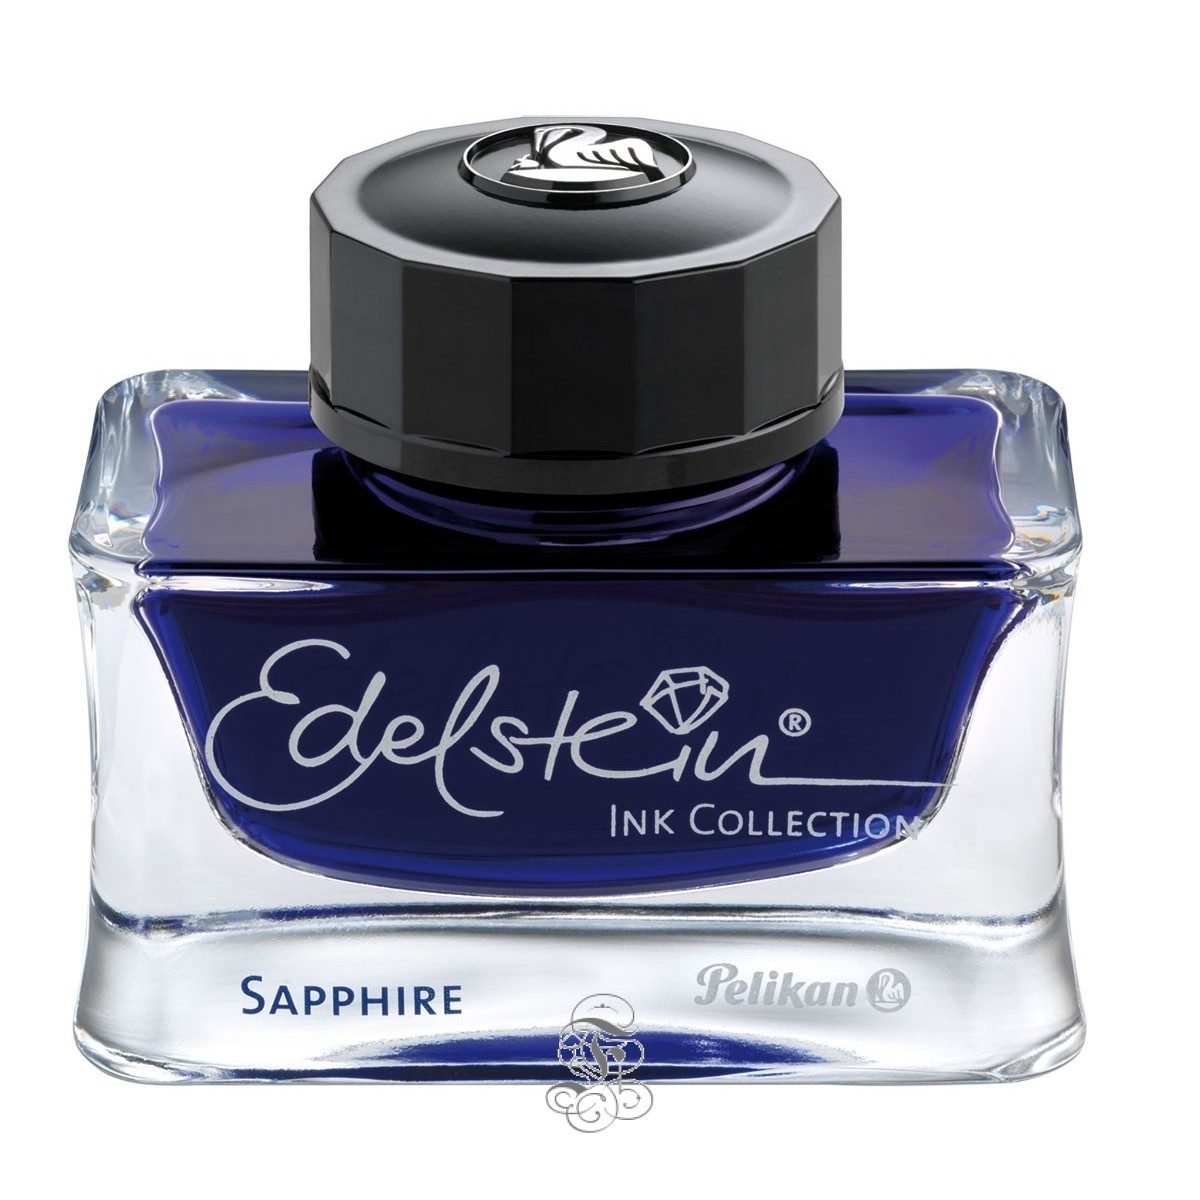 Pelikan Edelstein Sapphire – Inkt